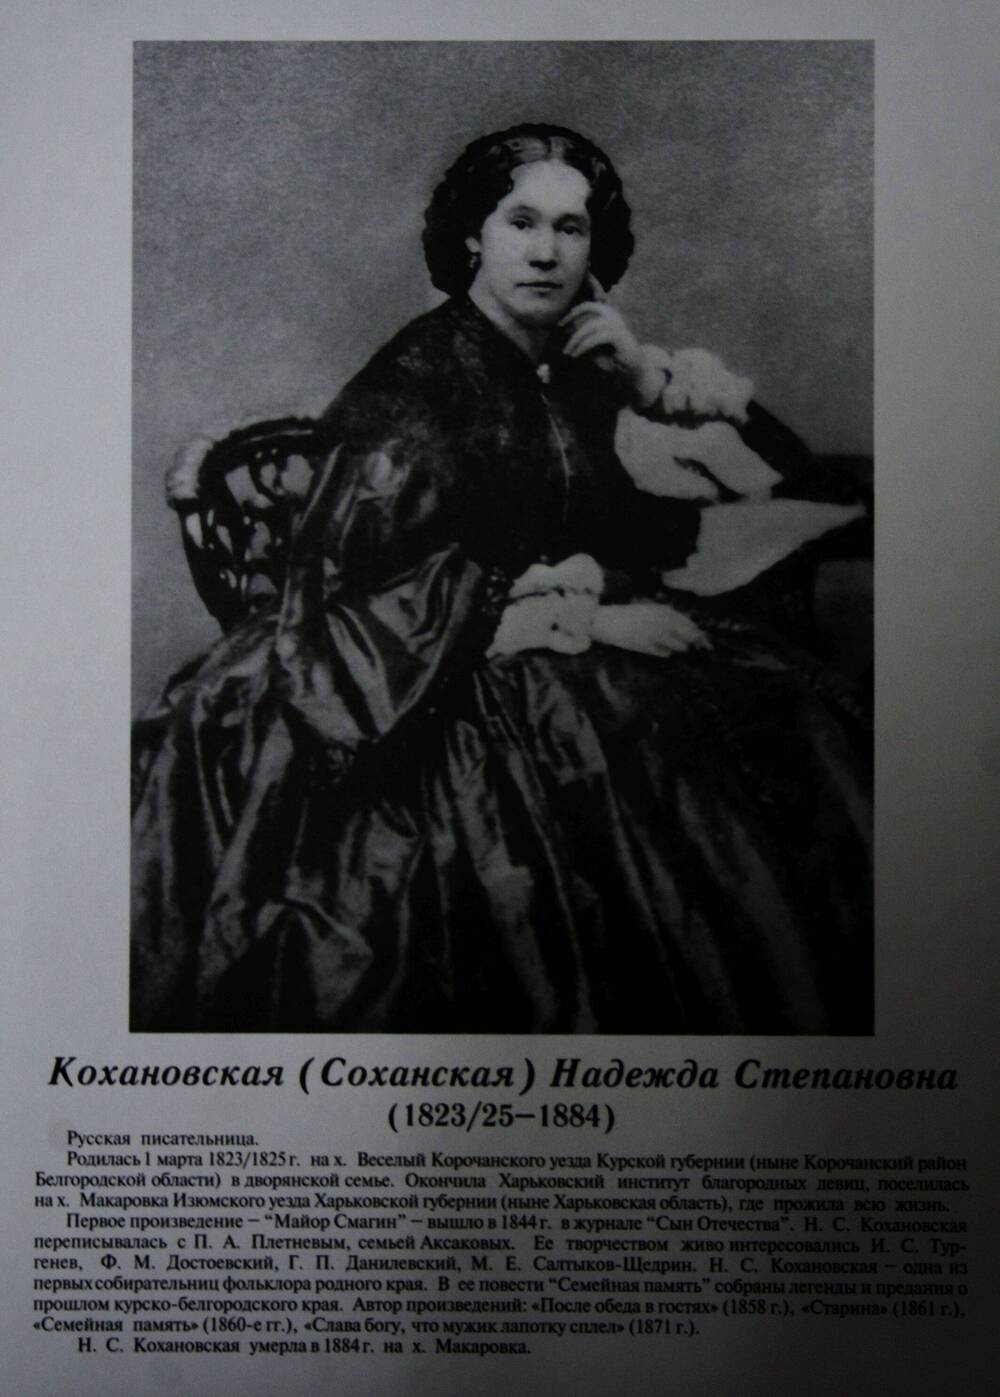 Плакат (фотопортрет) из комплекта Галерея славных имен Белгородчины. Кохановская (Соханская) Надежда Степановна (1823/25-1884).